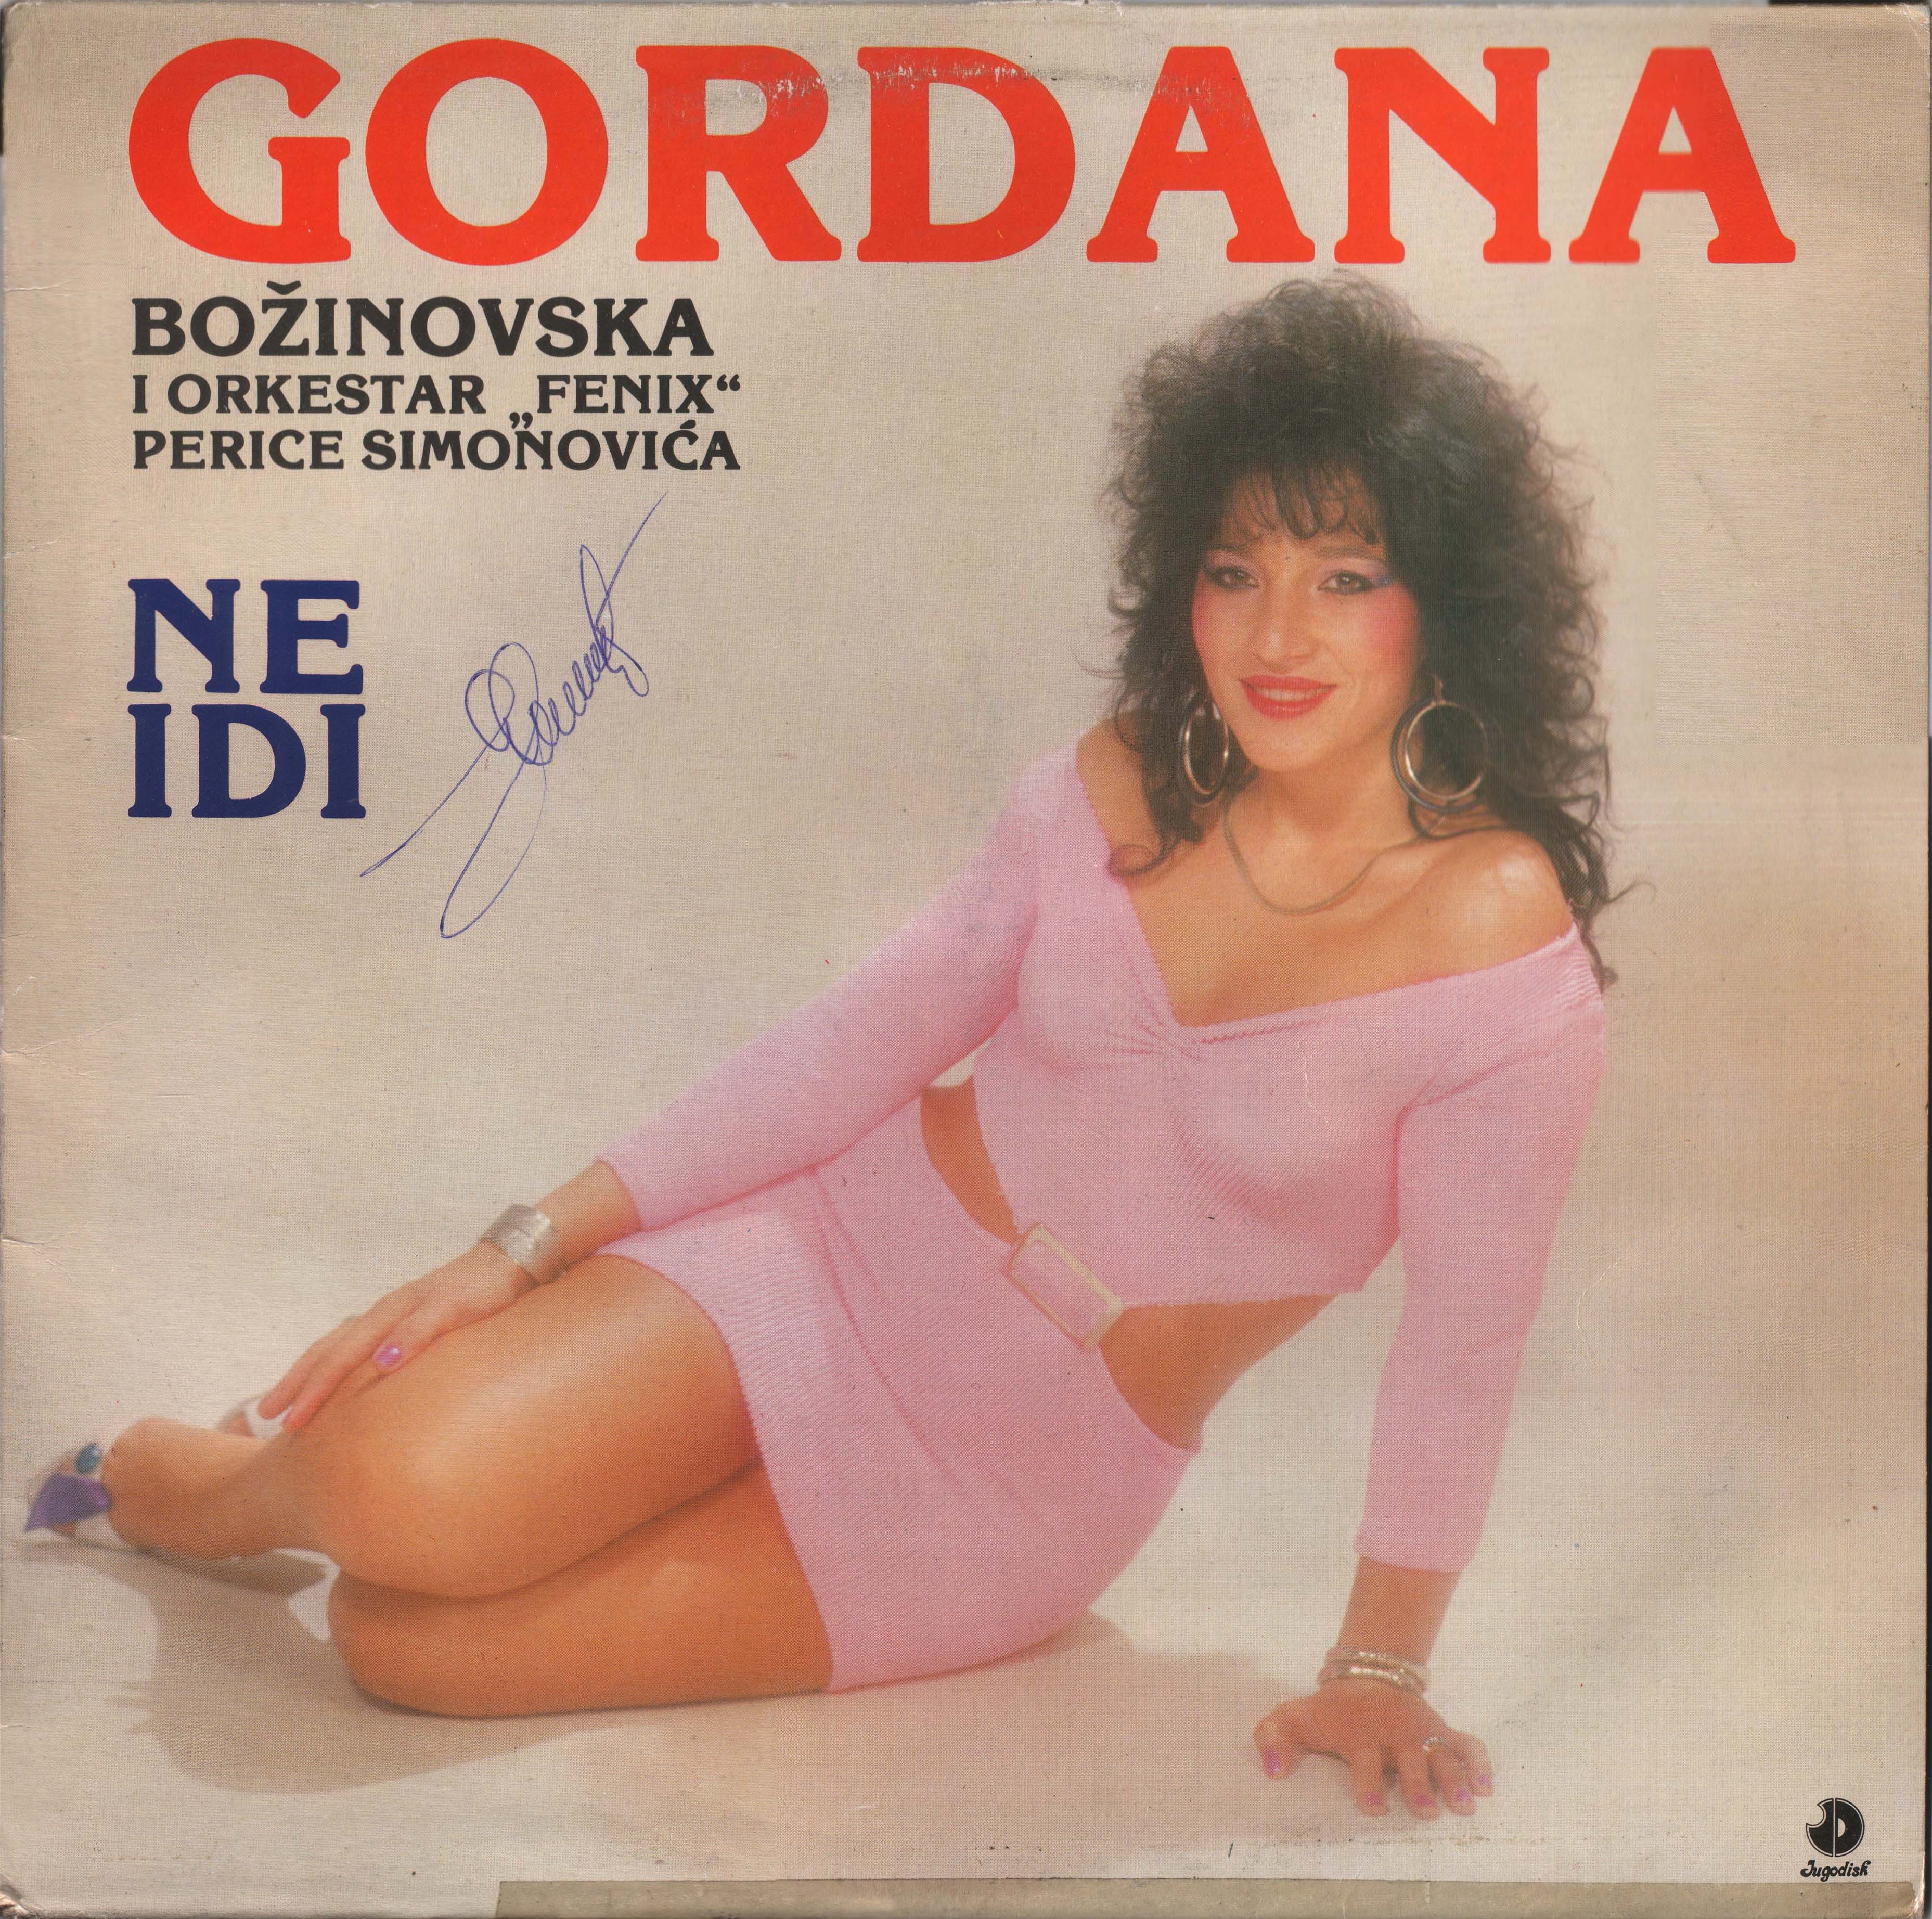 Gordana Bozinovska 1987 P